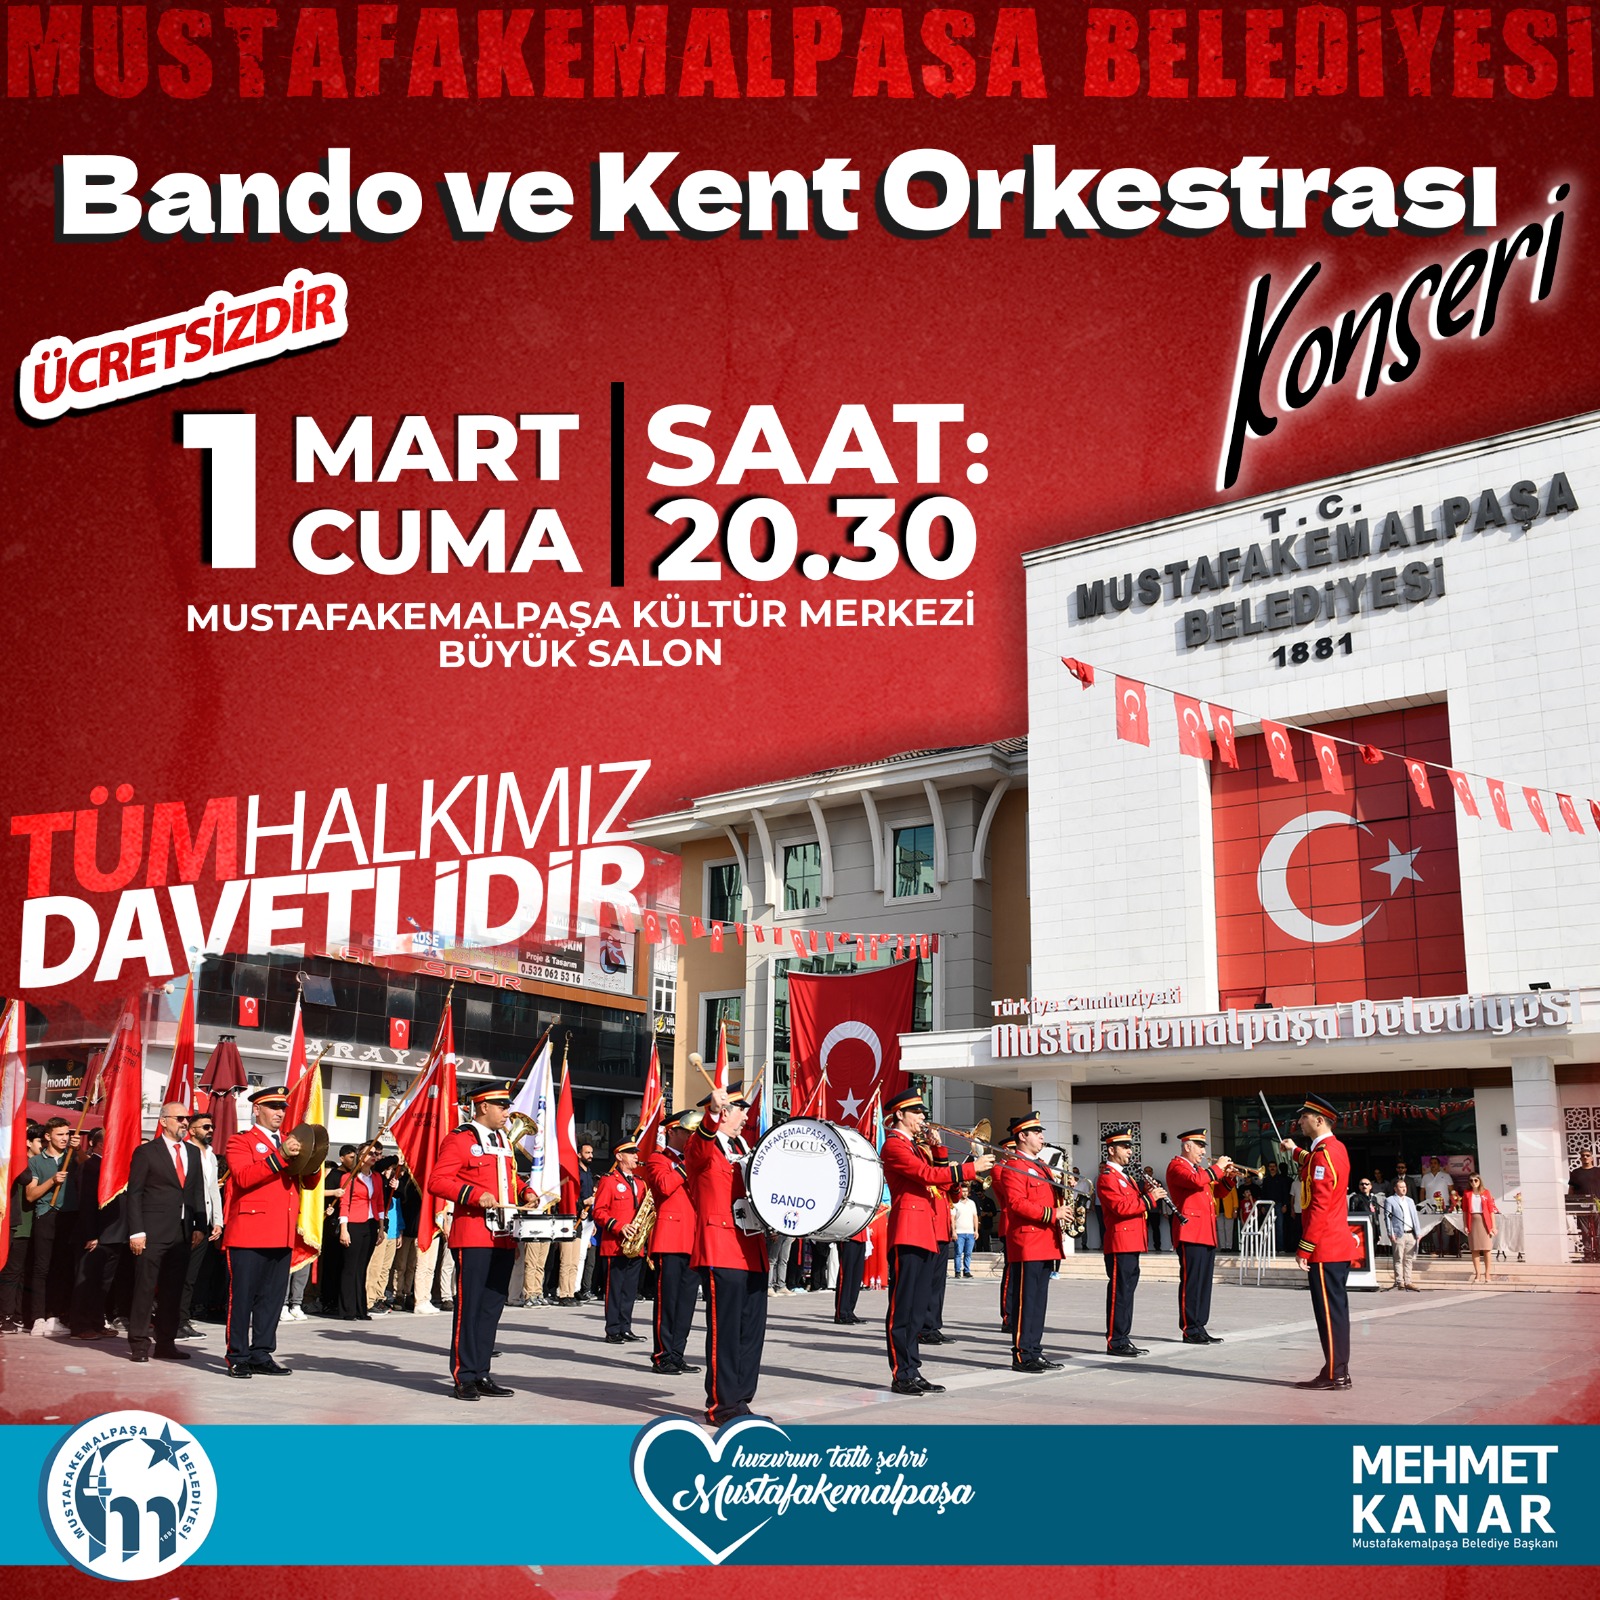 Mustafakemalpaşa Beledi̇yesi̇ Bando Ve Kent Orkestrasi'ndan Muhteşem Konser (1)